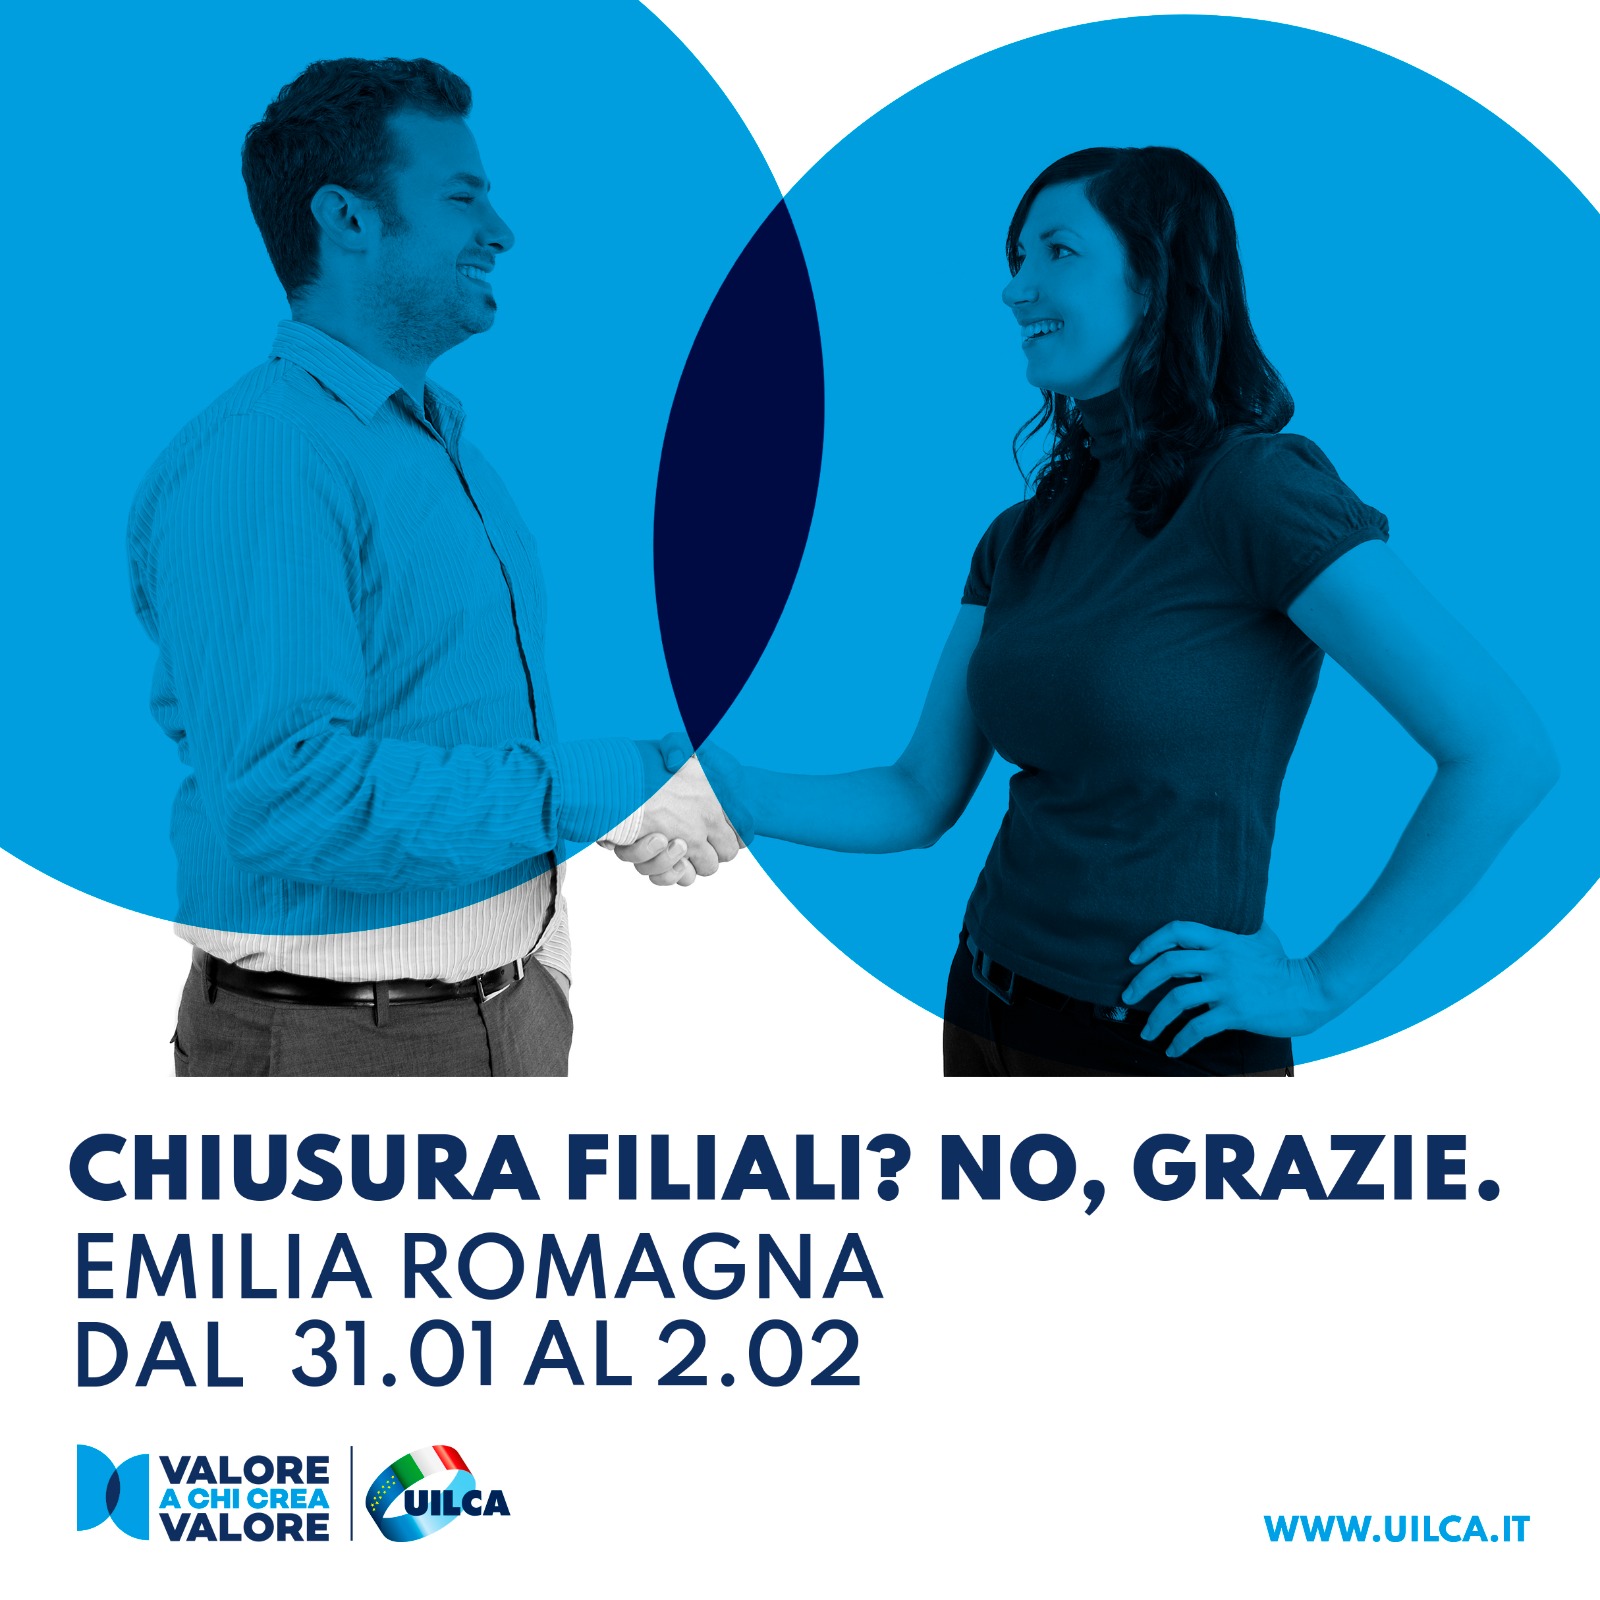 Locandina della campagna Uilca "Chiusura filiali? No grazie." contro il fenomeno della desertificazione bancaria, con indicazione delle date della prima tappa in Emilia-Romagna.